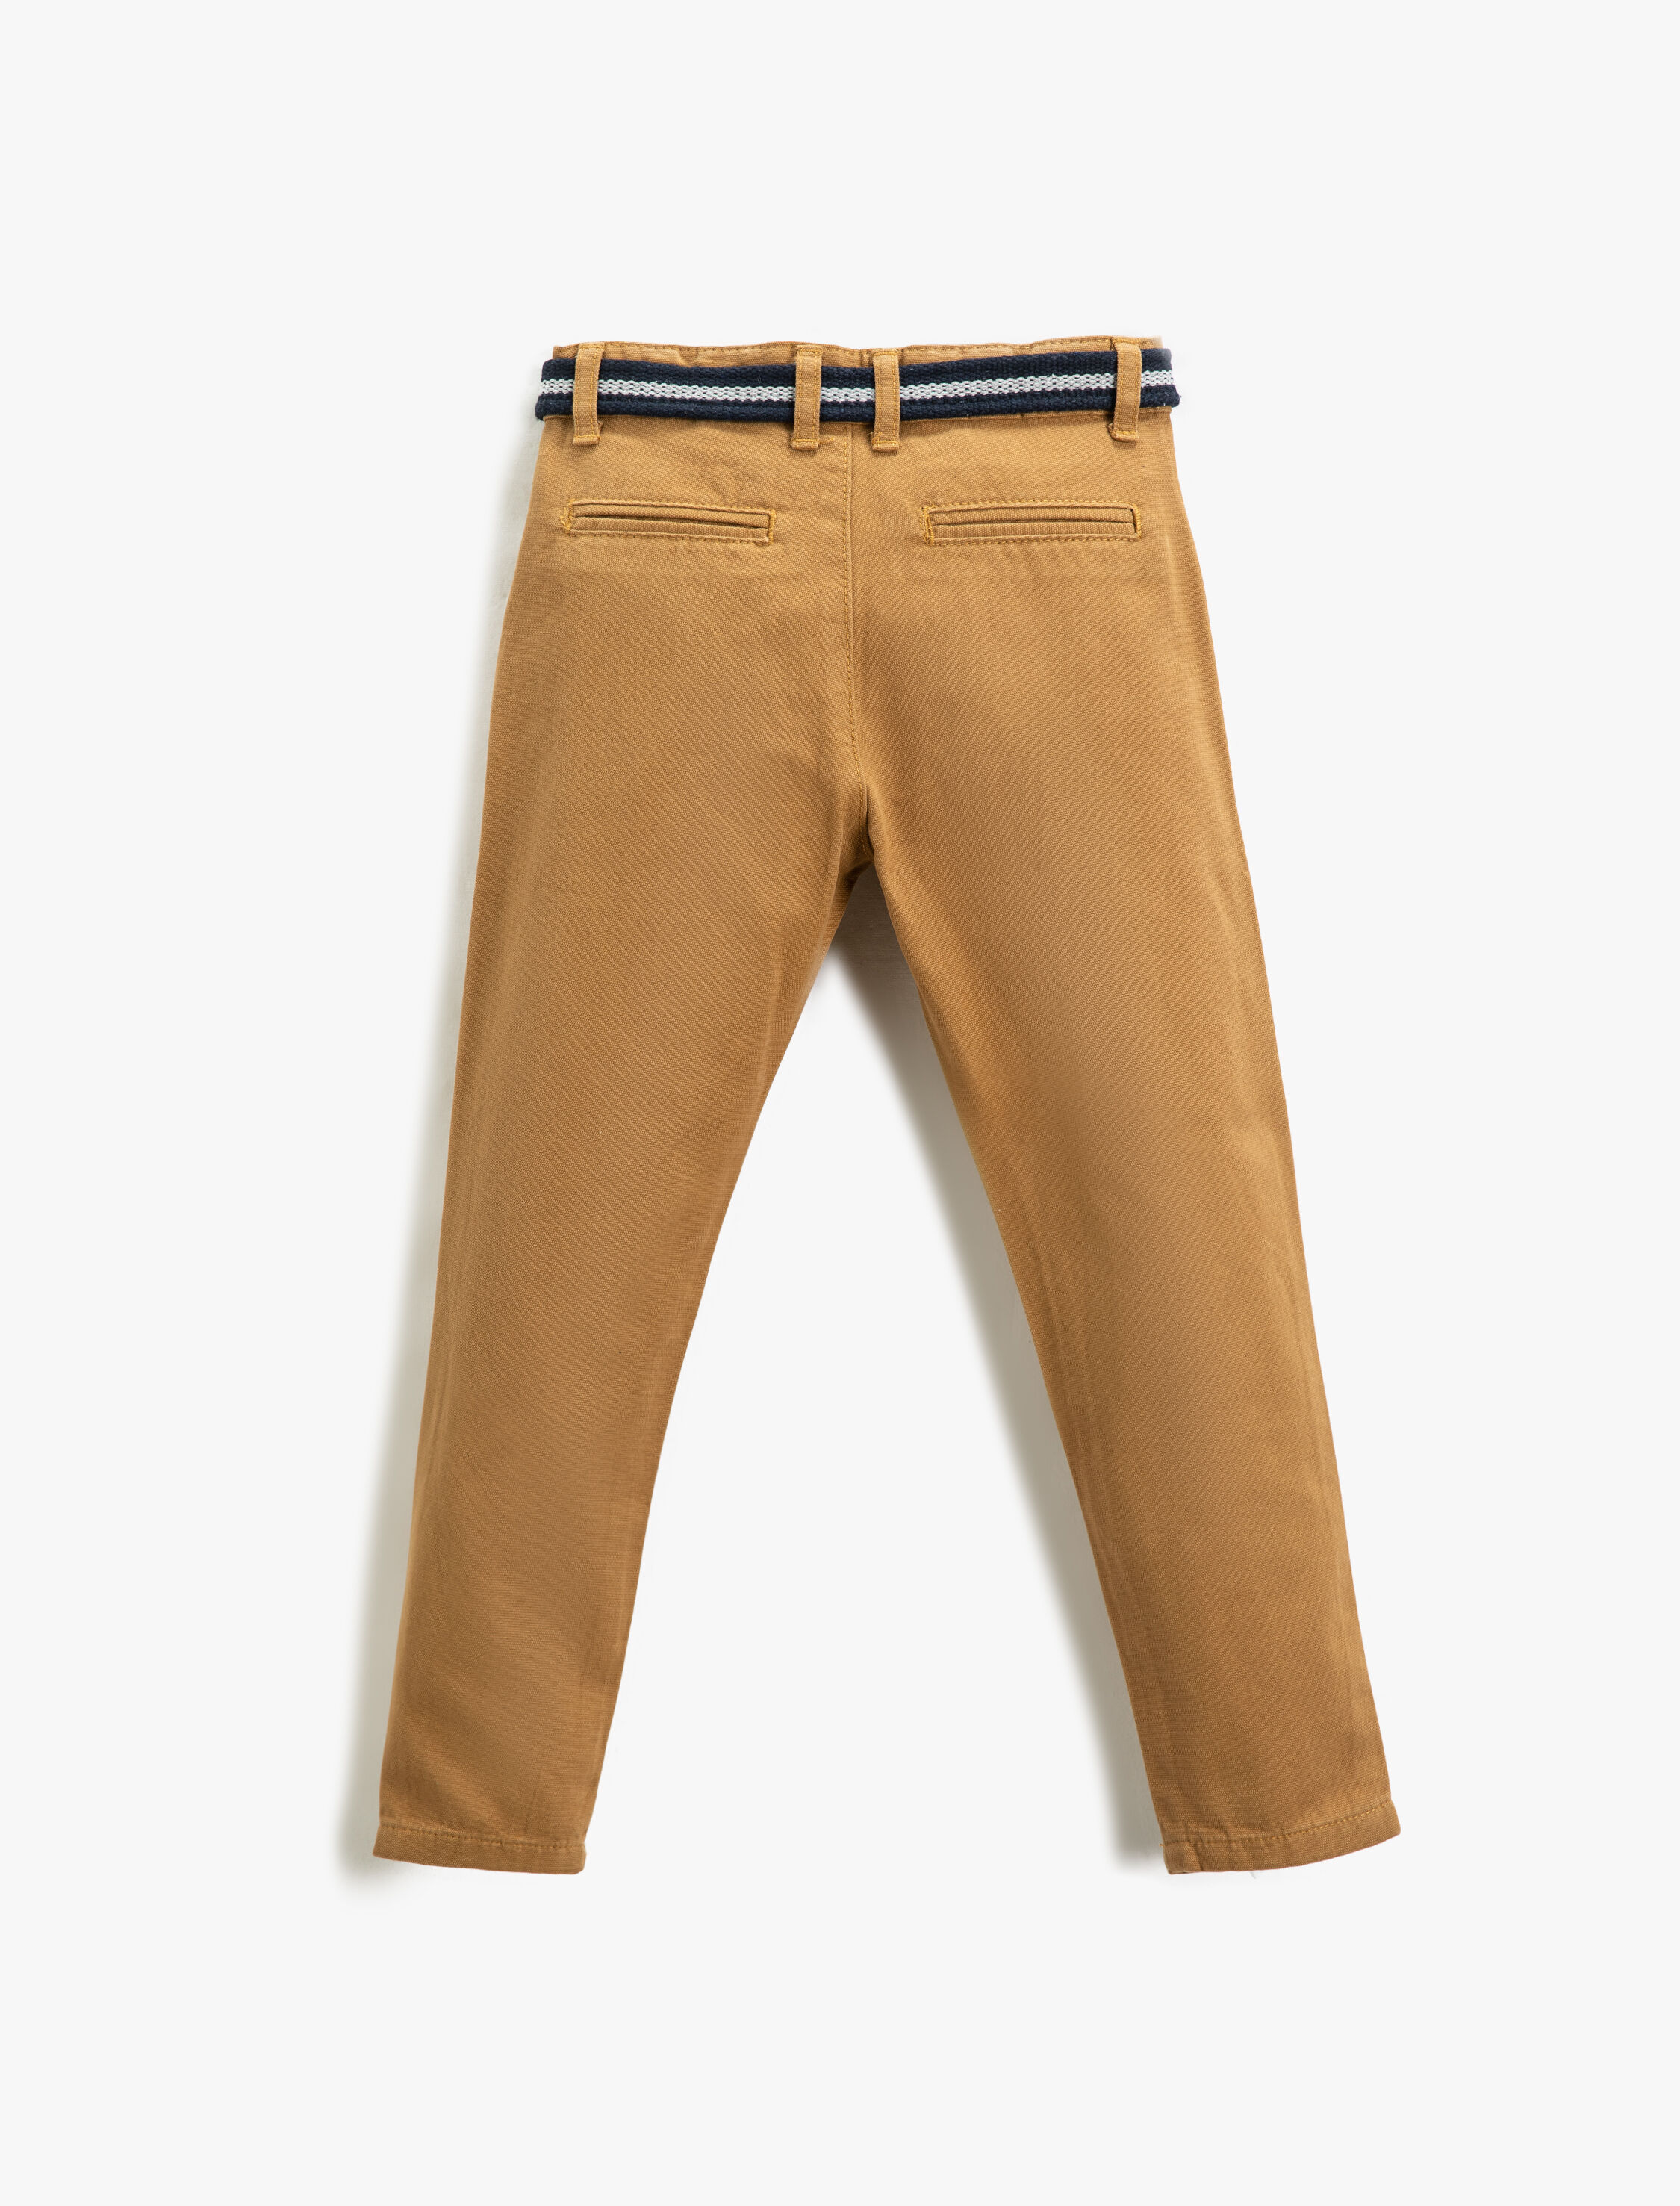 Koton Kumaş Pantolon Slim Fit Kemerli Cepli Beli Ayarlanabilir Lastikli Beli Ayarlanabilir Lastikli. 2